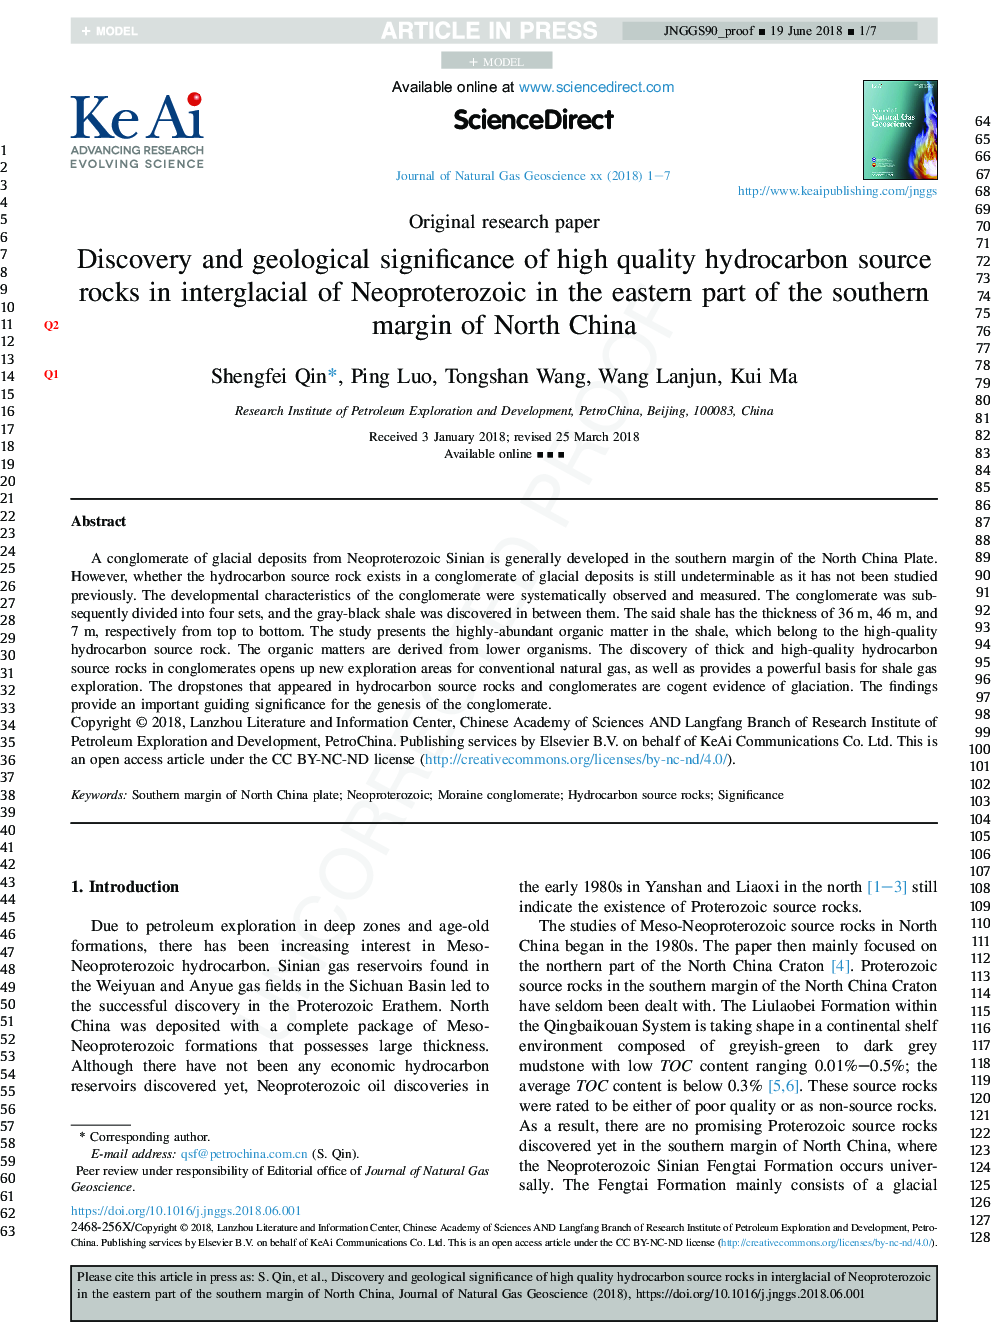 کشف و اهمیت زمین شناسی سنگهای منبع کربنیک با کیفیت بالا در بین گلهای نئوپروتروزیوئیک در بخش شرقی حاشیه جنوبی شمال چین 